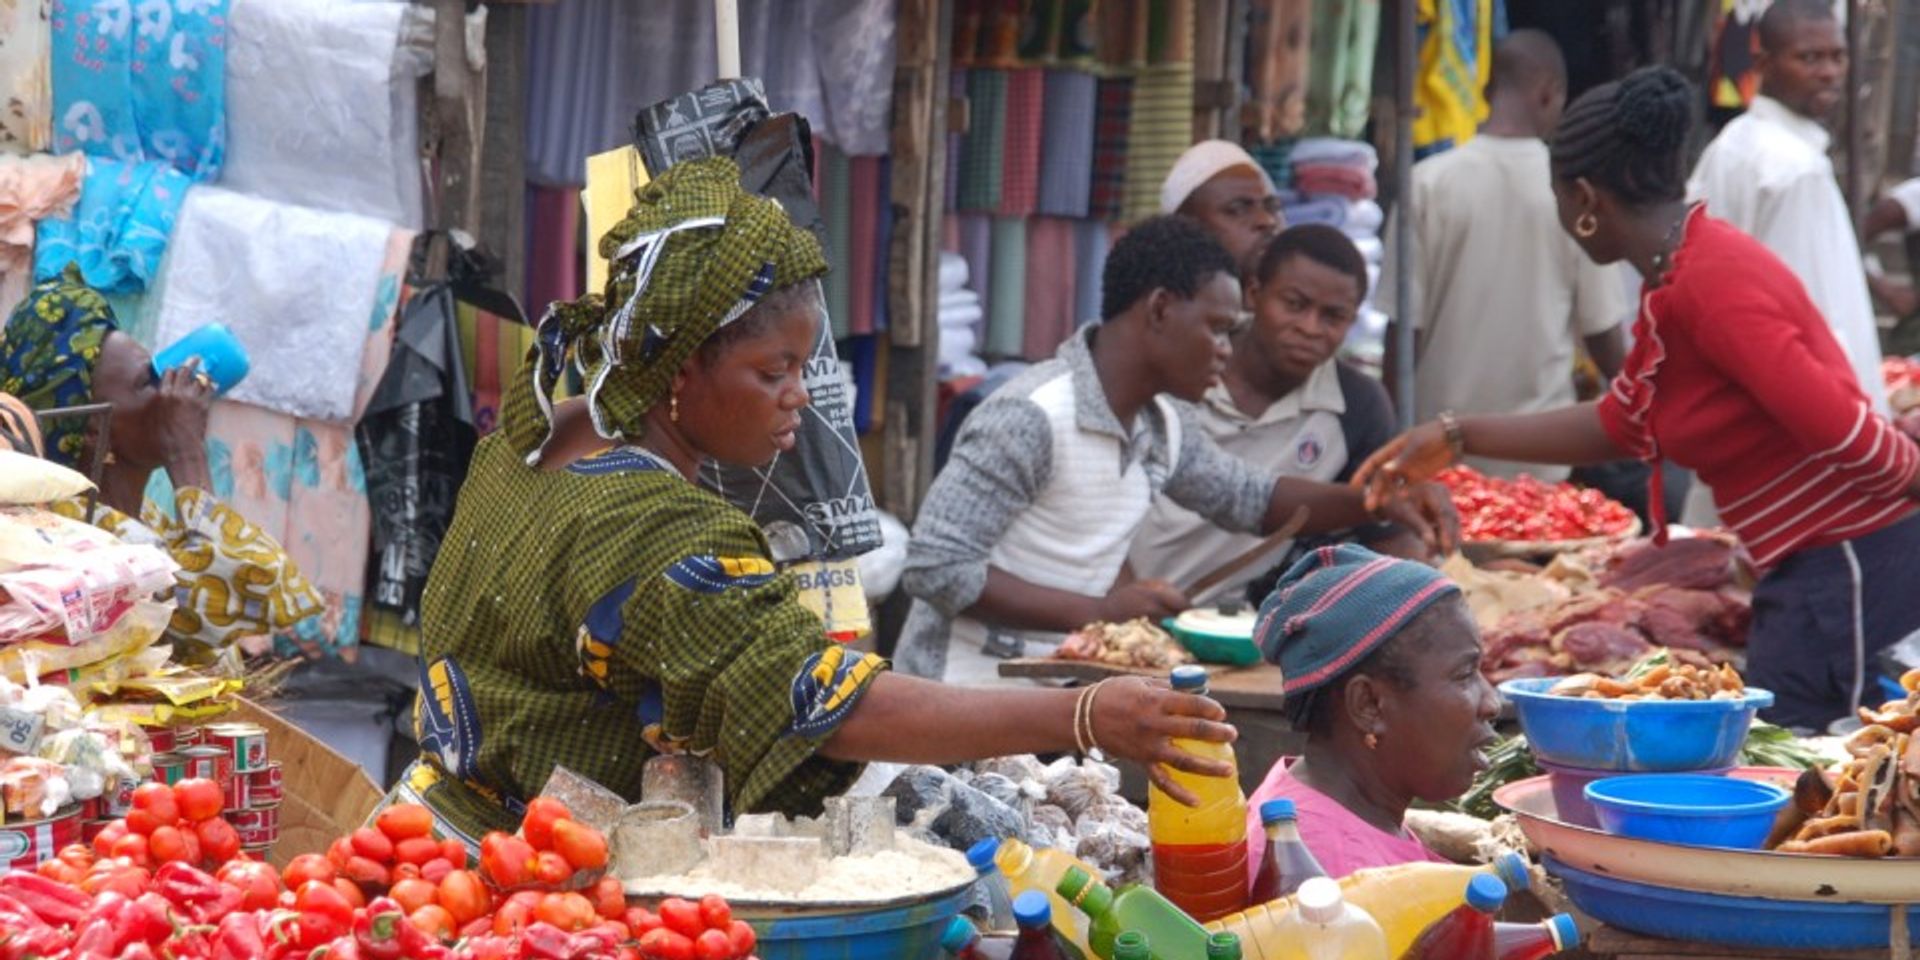 Eine Frau greift auf einem Marktstand in Afrika nach einer Flasche, um sie zu verkaufen.